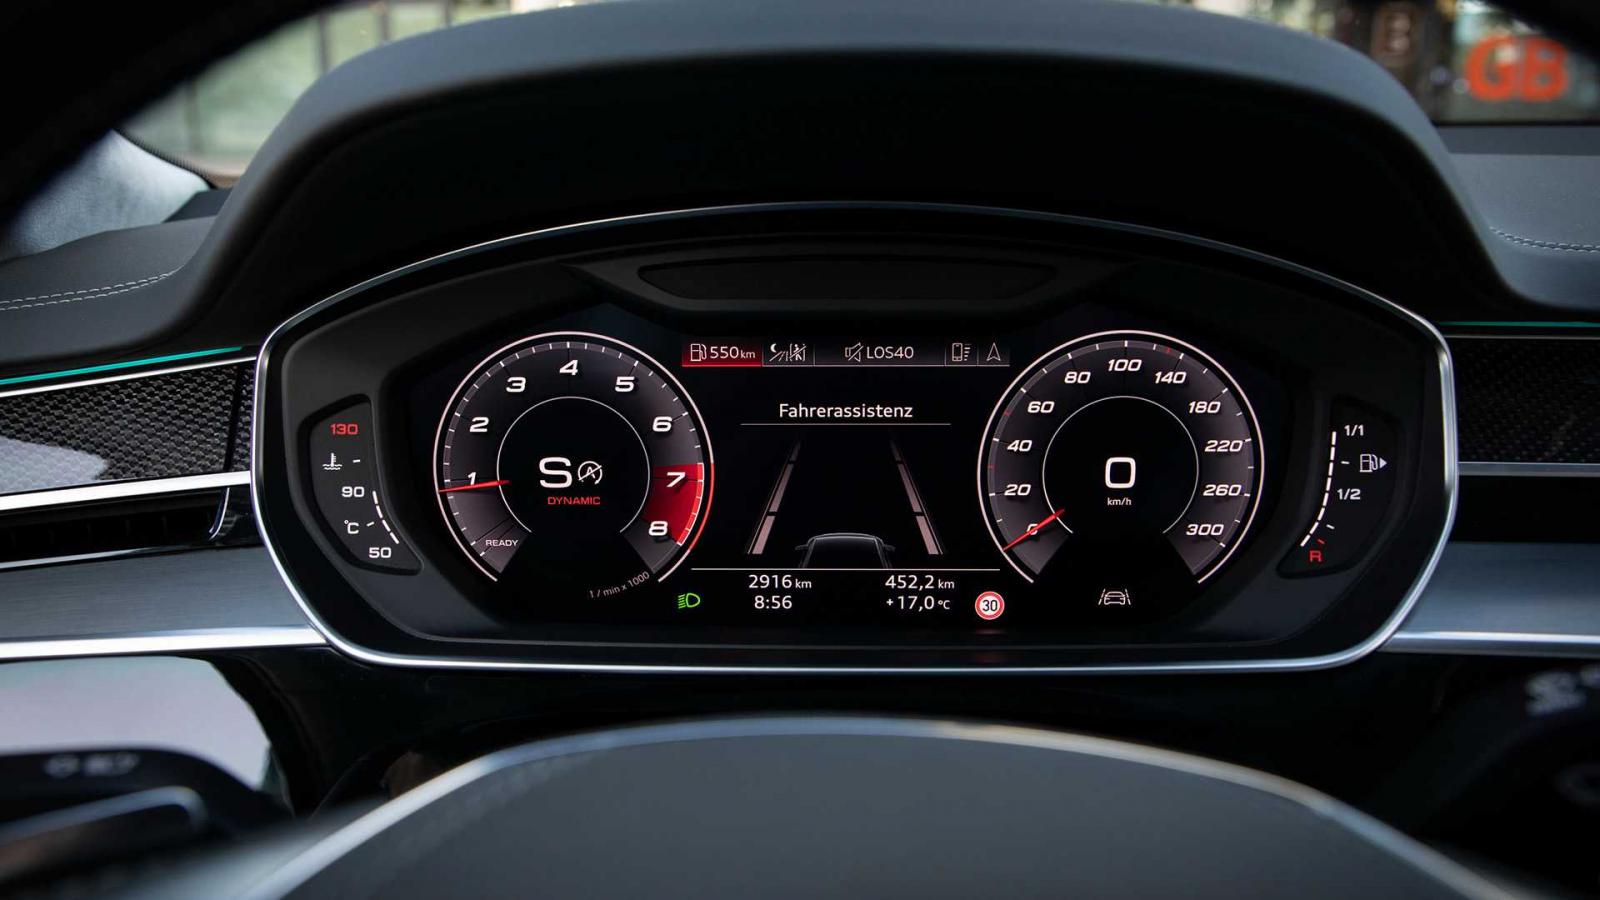 Đánh giá xe Audi S8 2020 về trang bị tiện nghi: đồng hồ lái